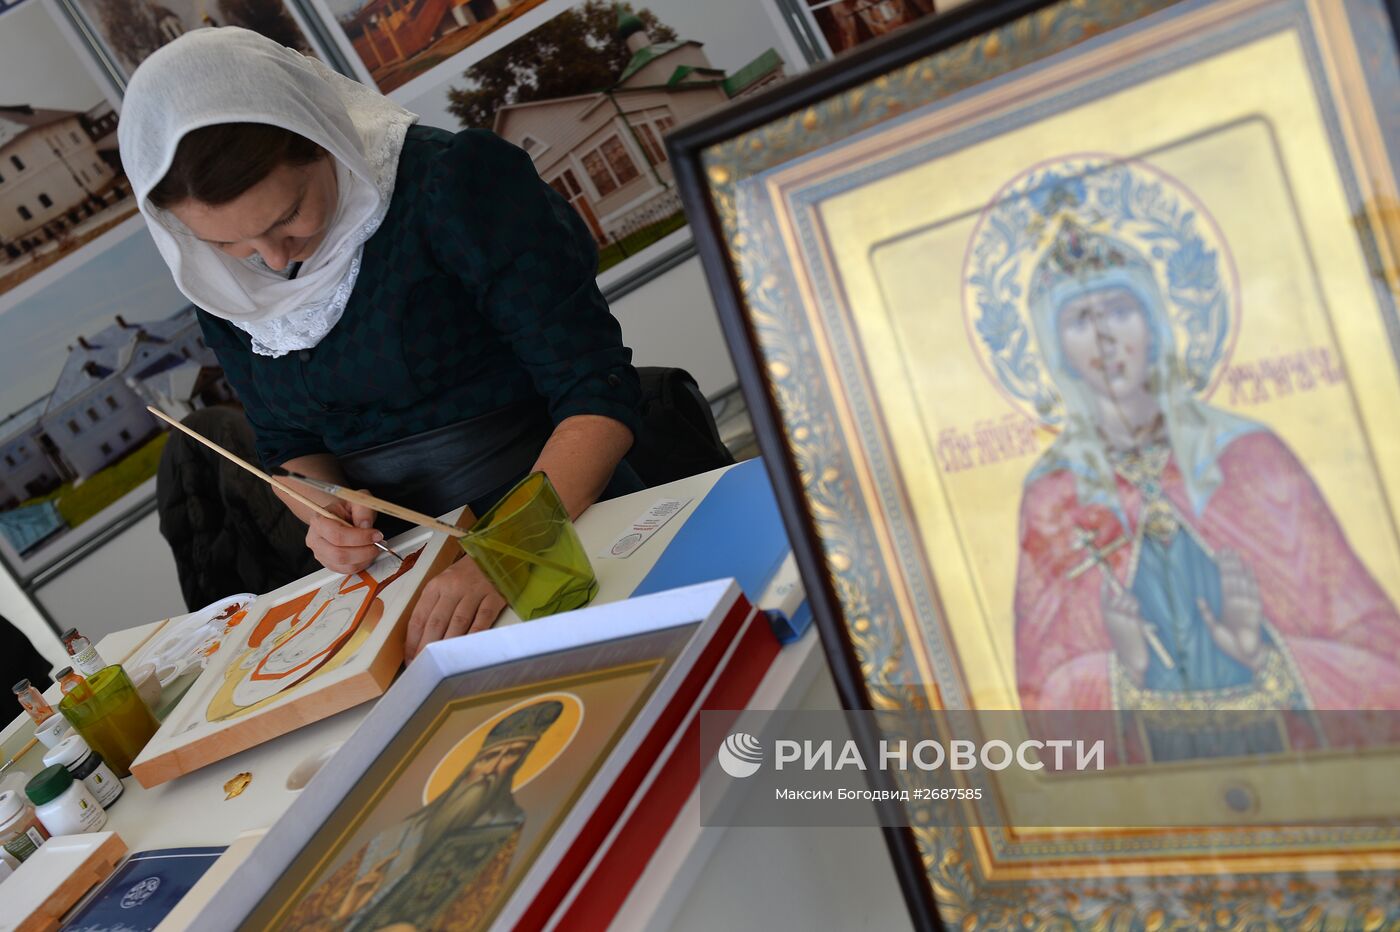 Этноконфессиональный фестиваль "Мозаика культур" в Казани